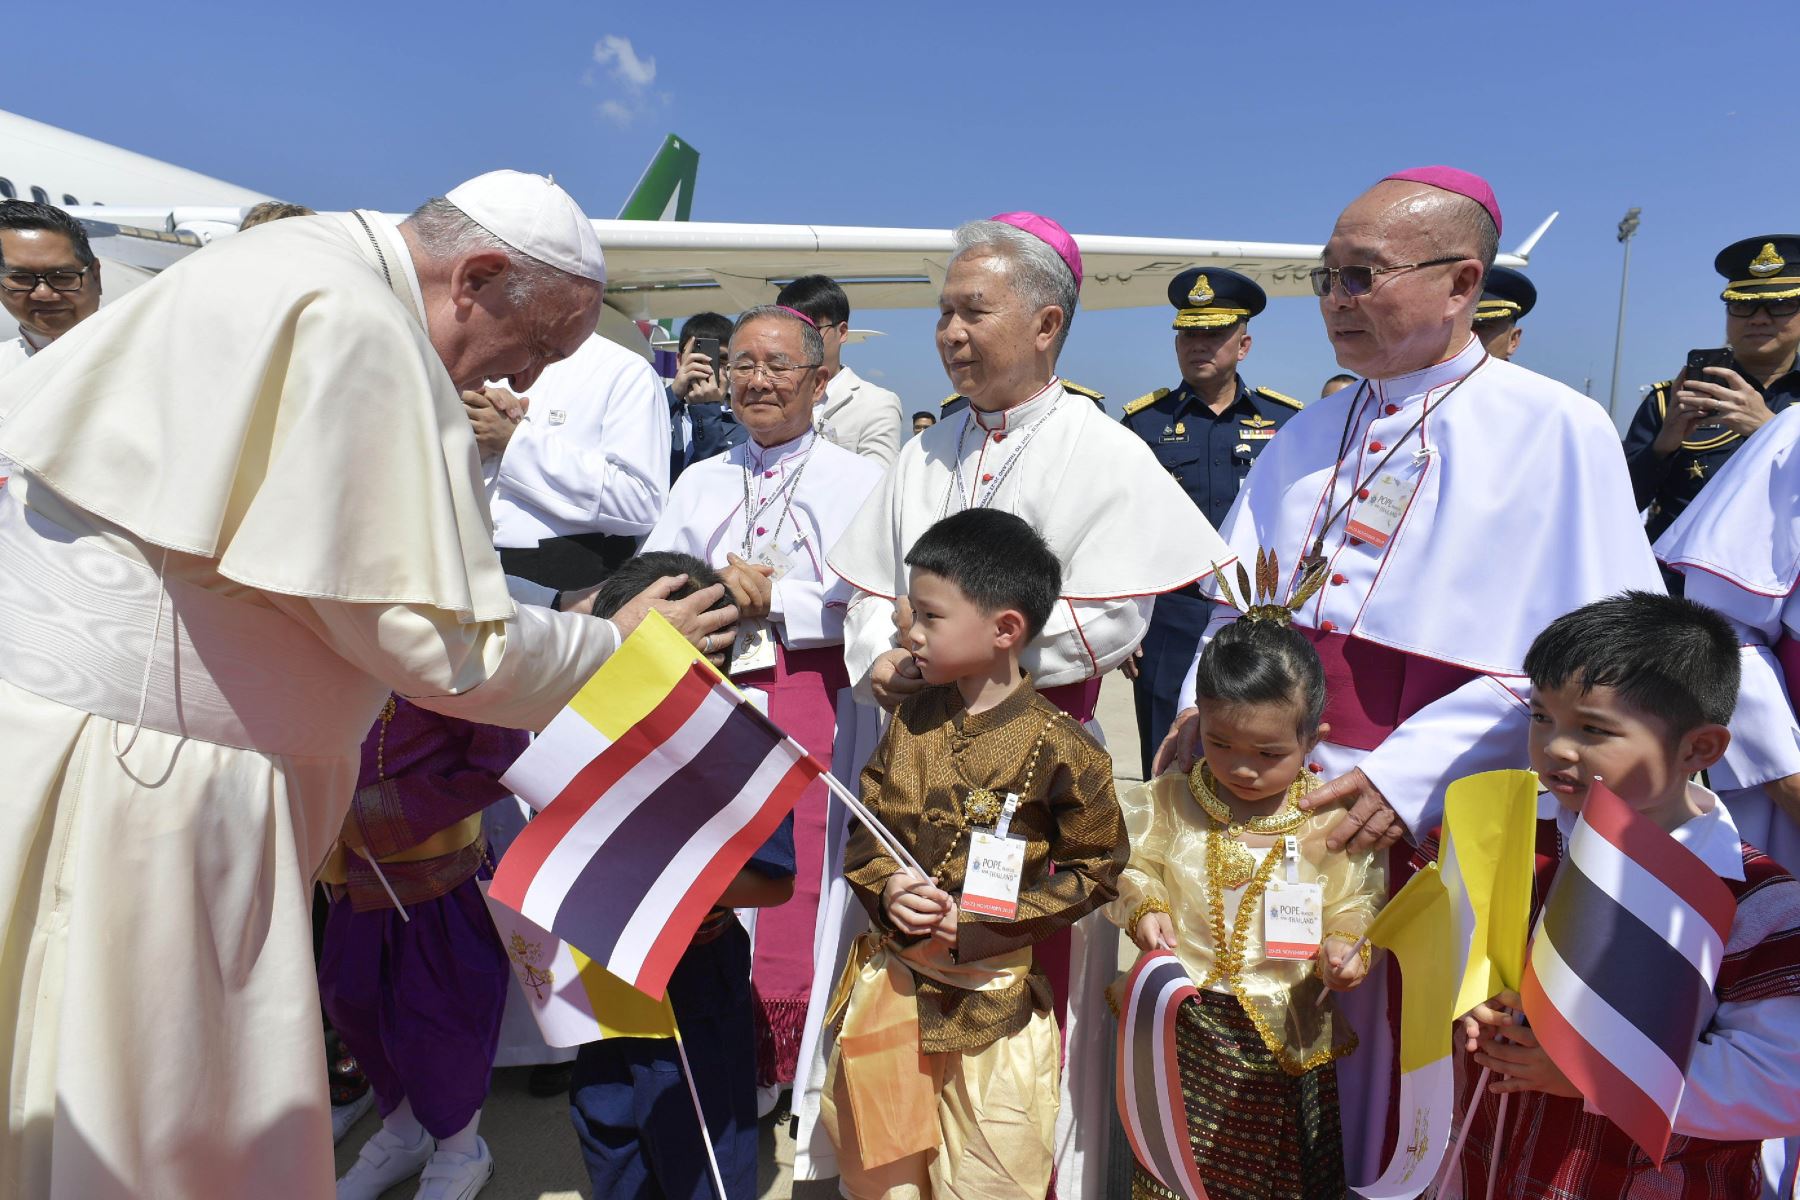 El Papa Francisco llegó a Tailandia, la primera etapa de una gira asiática que se extenderá por Japón y llevará un mensaje de diálogo y desarme nuclear. Foto: AFP